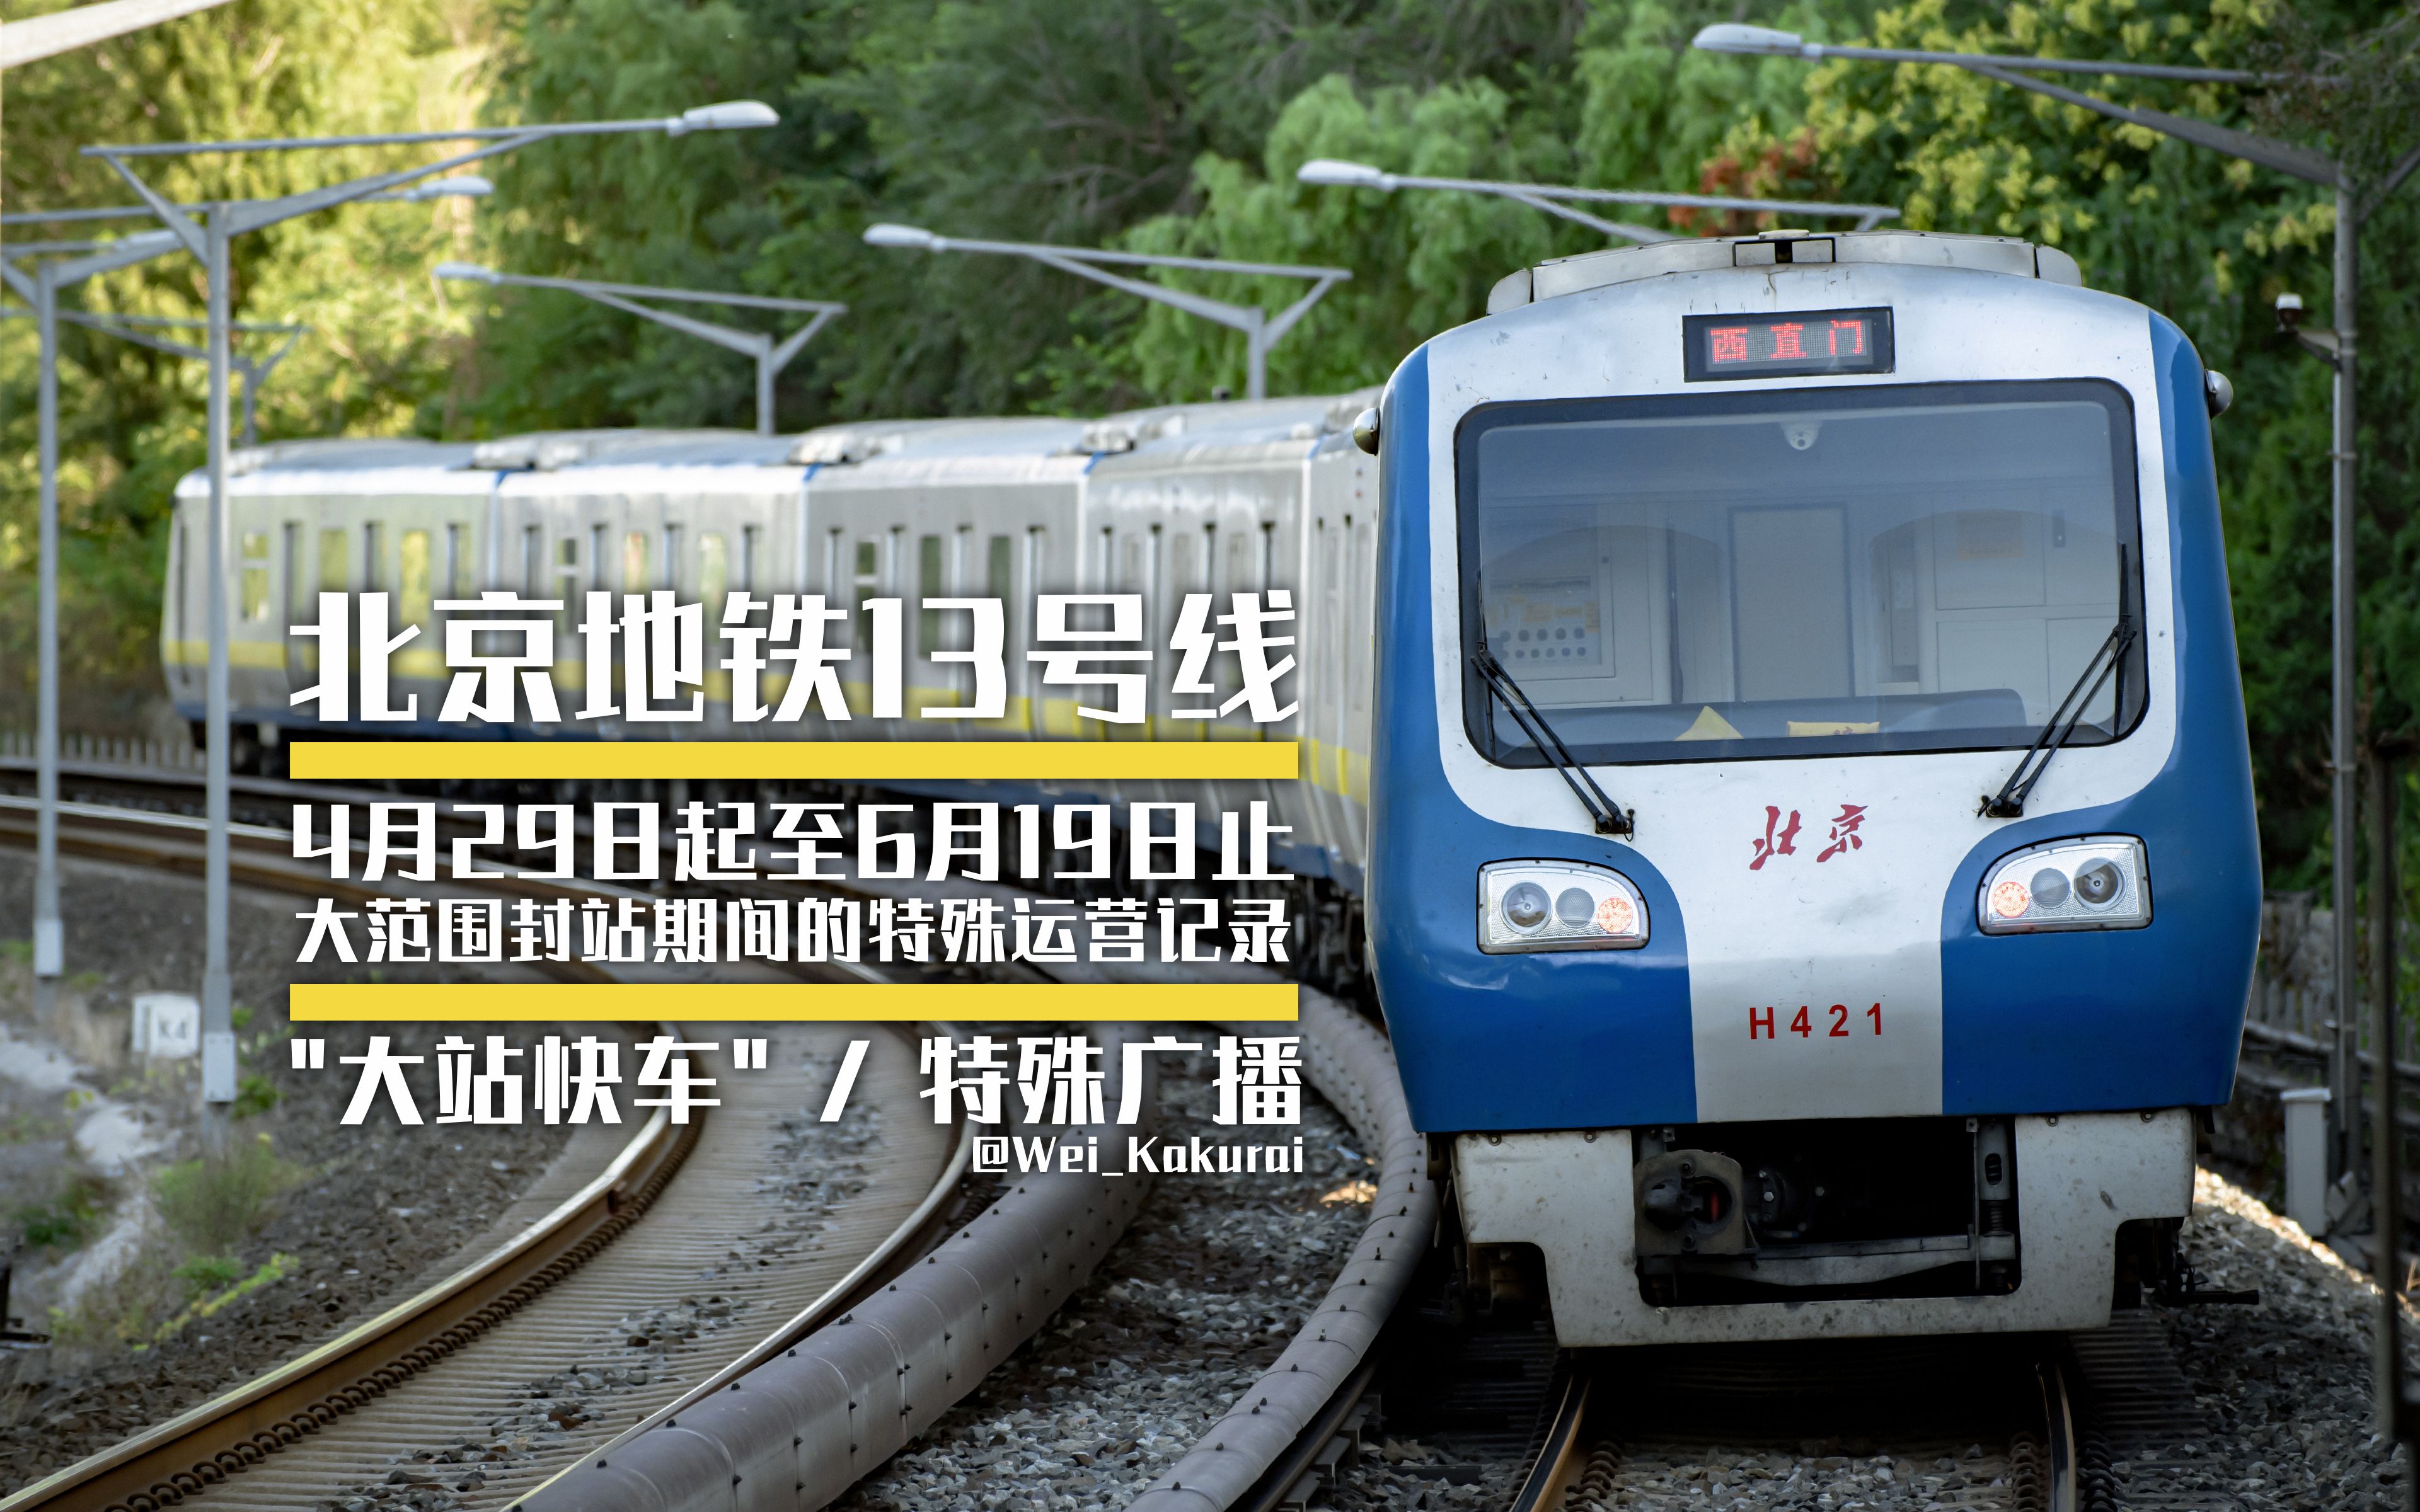 【北京地铁】13号线4月29日起至6月19日止大范围封站期间的特殊运营记